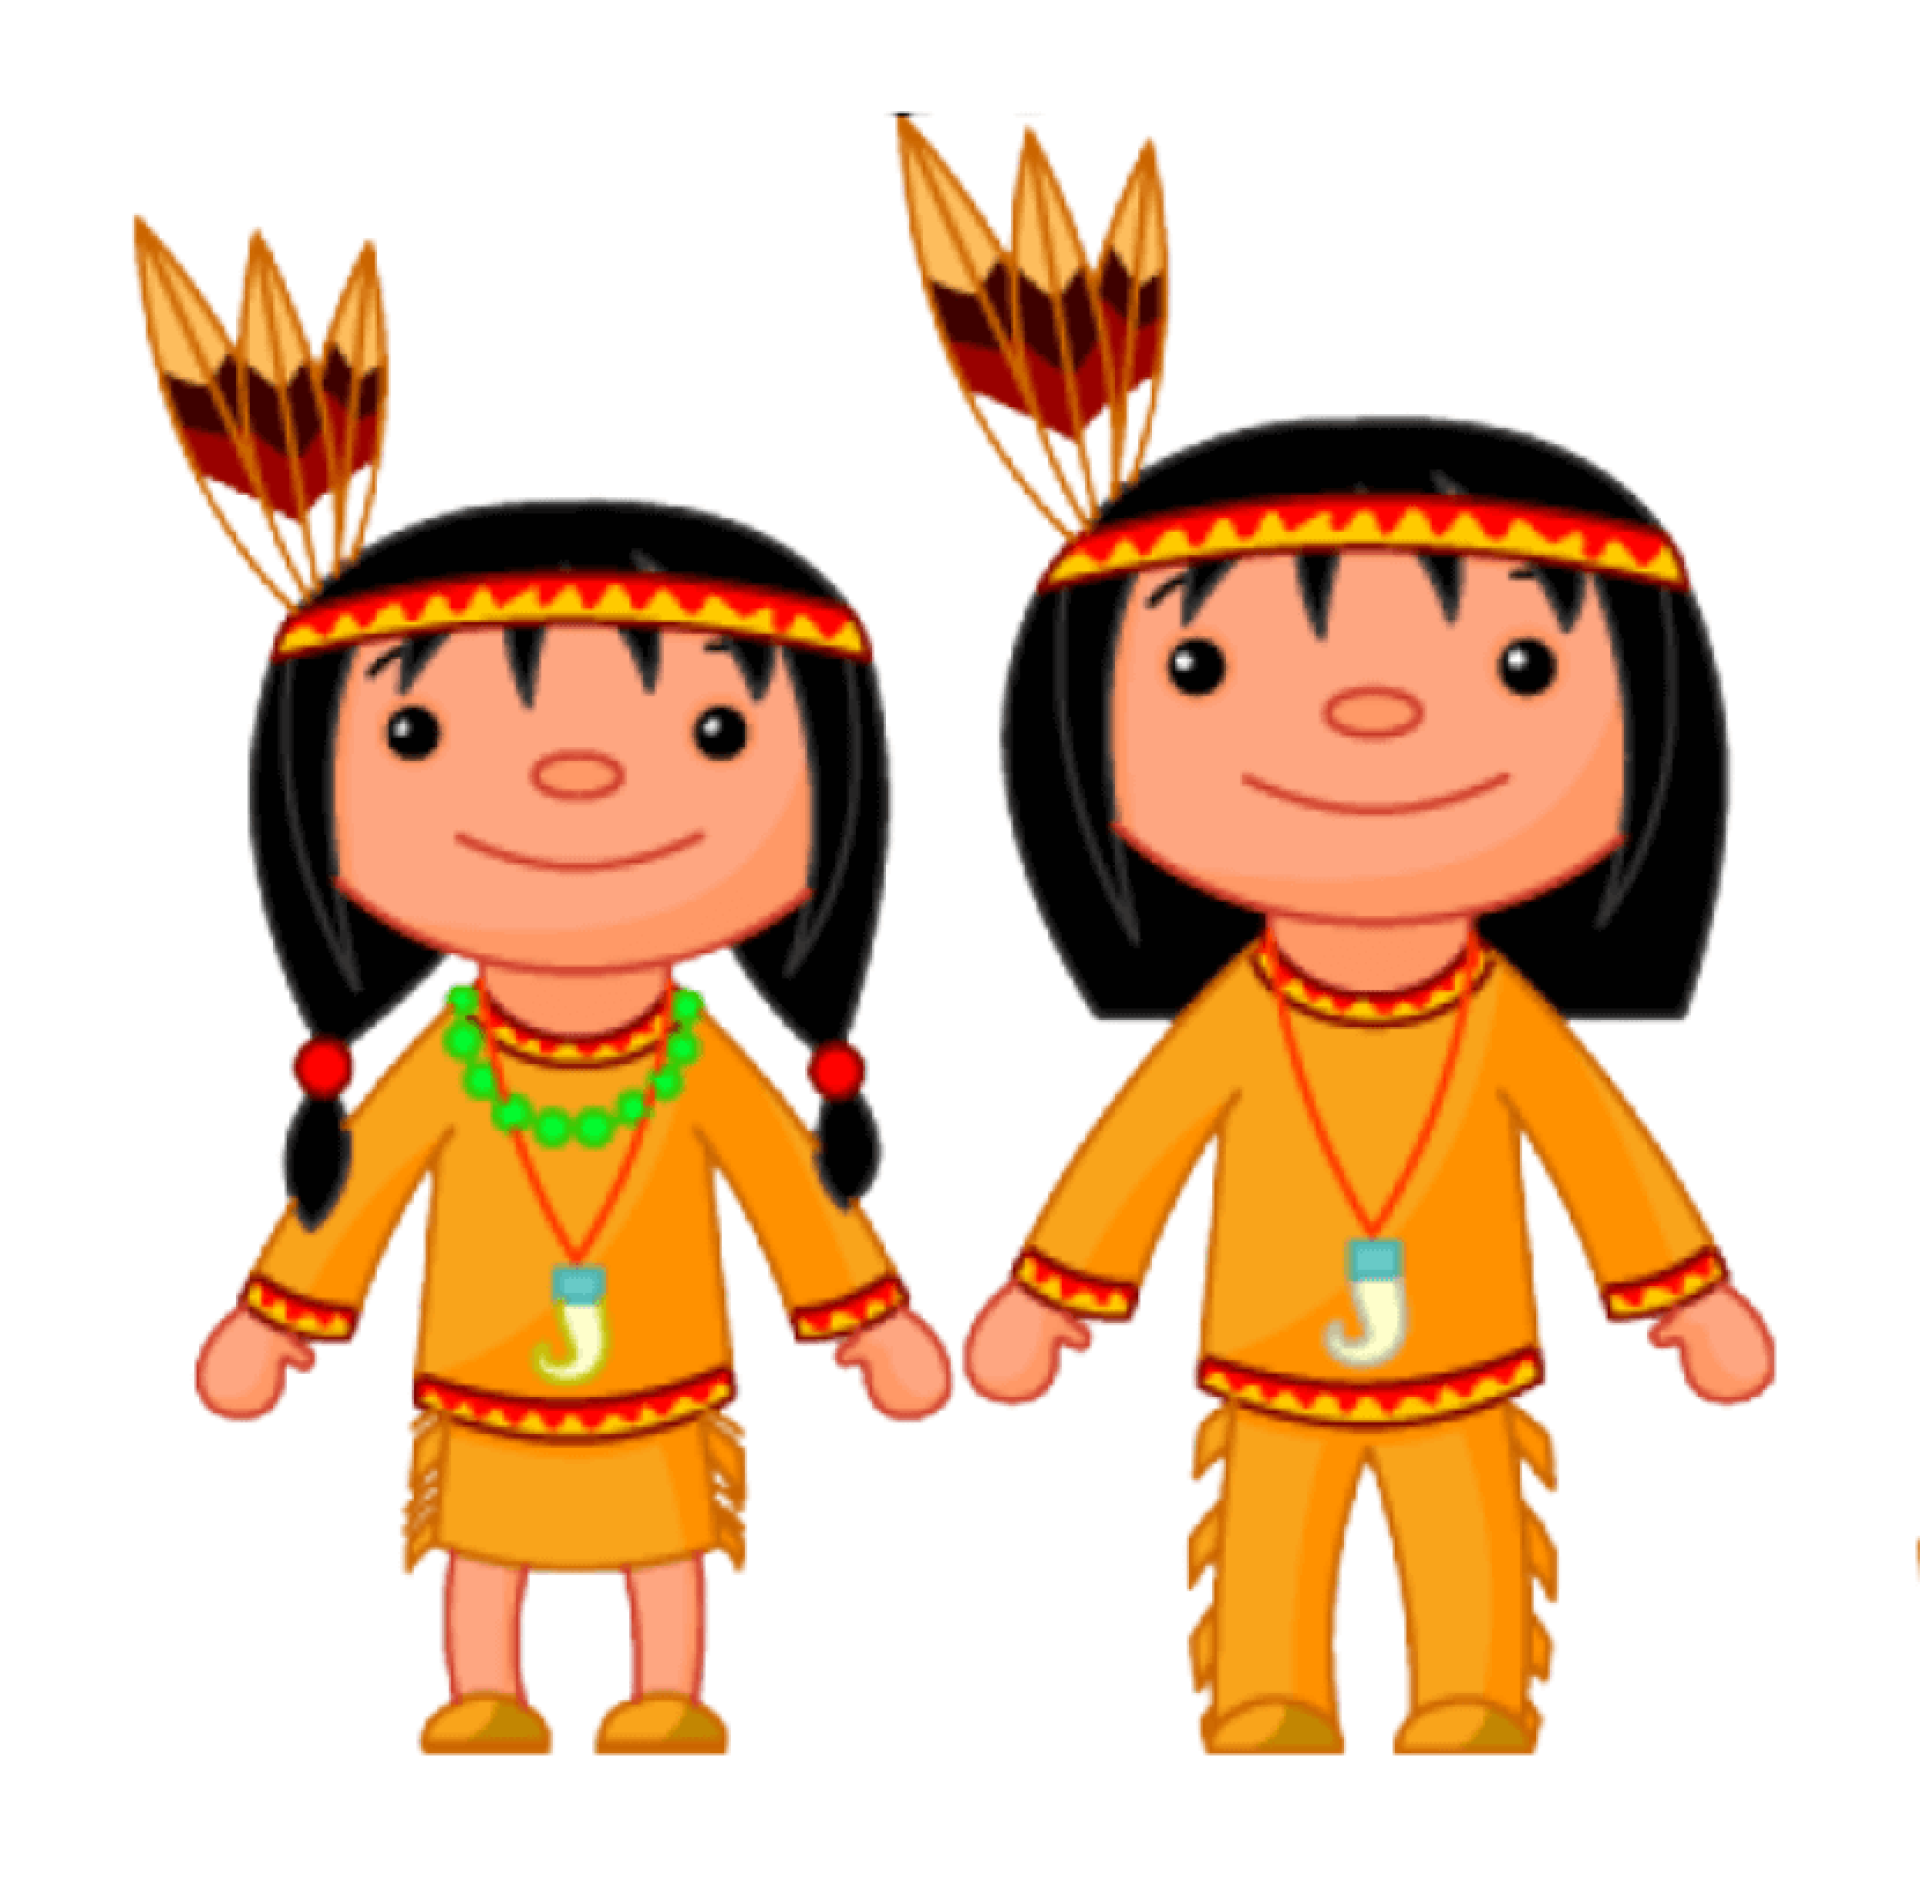 Two native American children in traditional attire